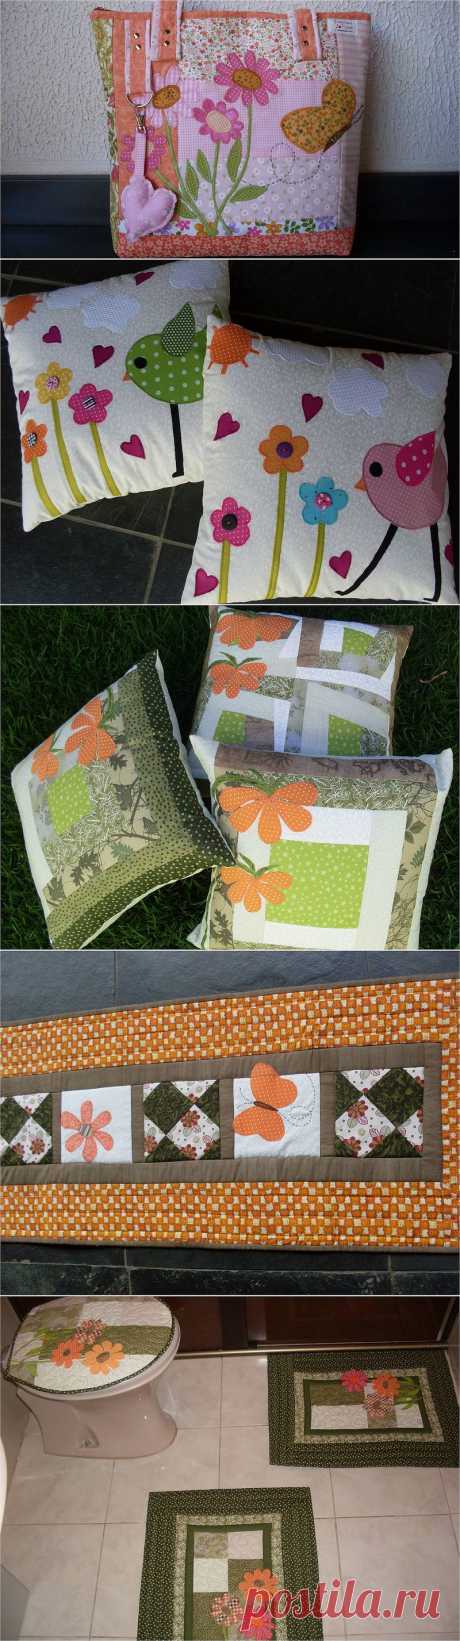 Лоскутные изделия в стиле пэчворк ( сумки, подушки и другое) Fatima Mendes .